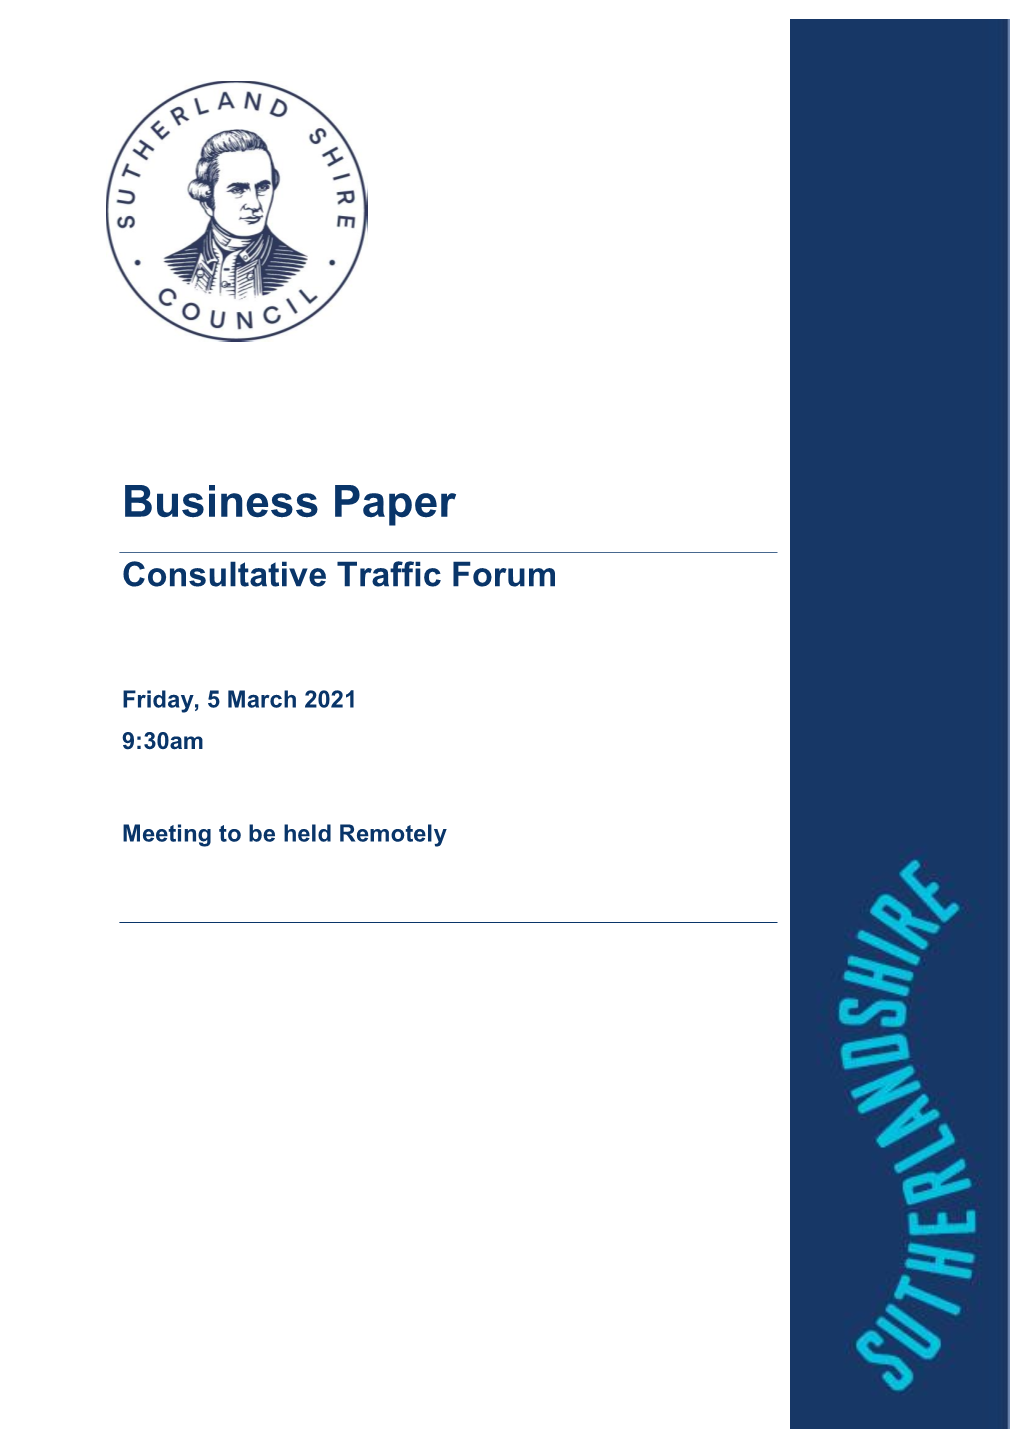 Agenda of Consultative Traffic Forum